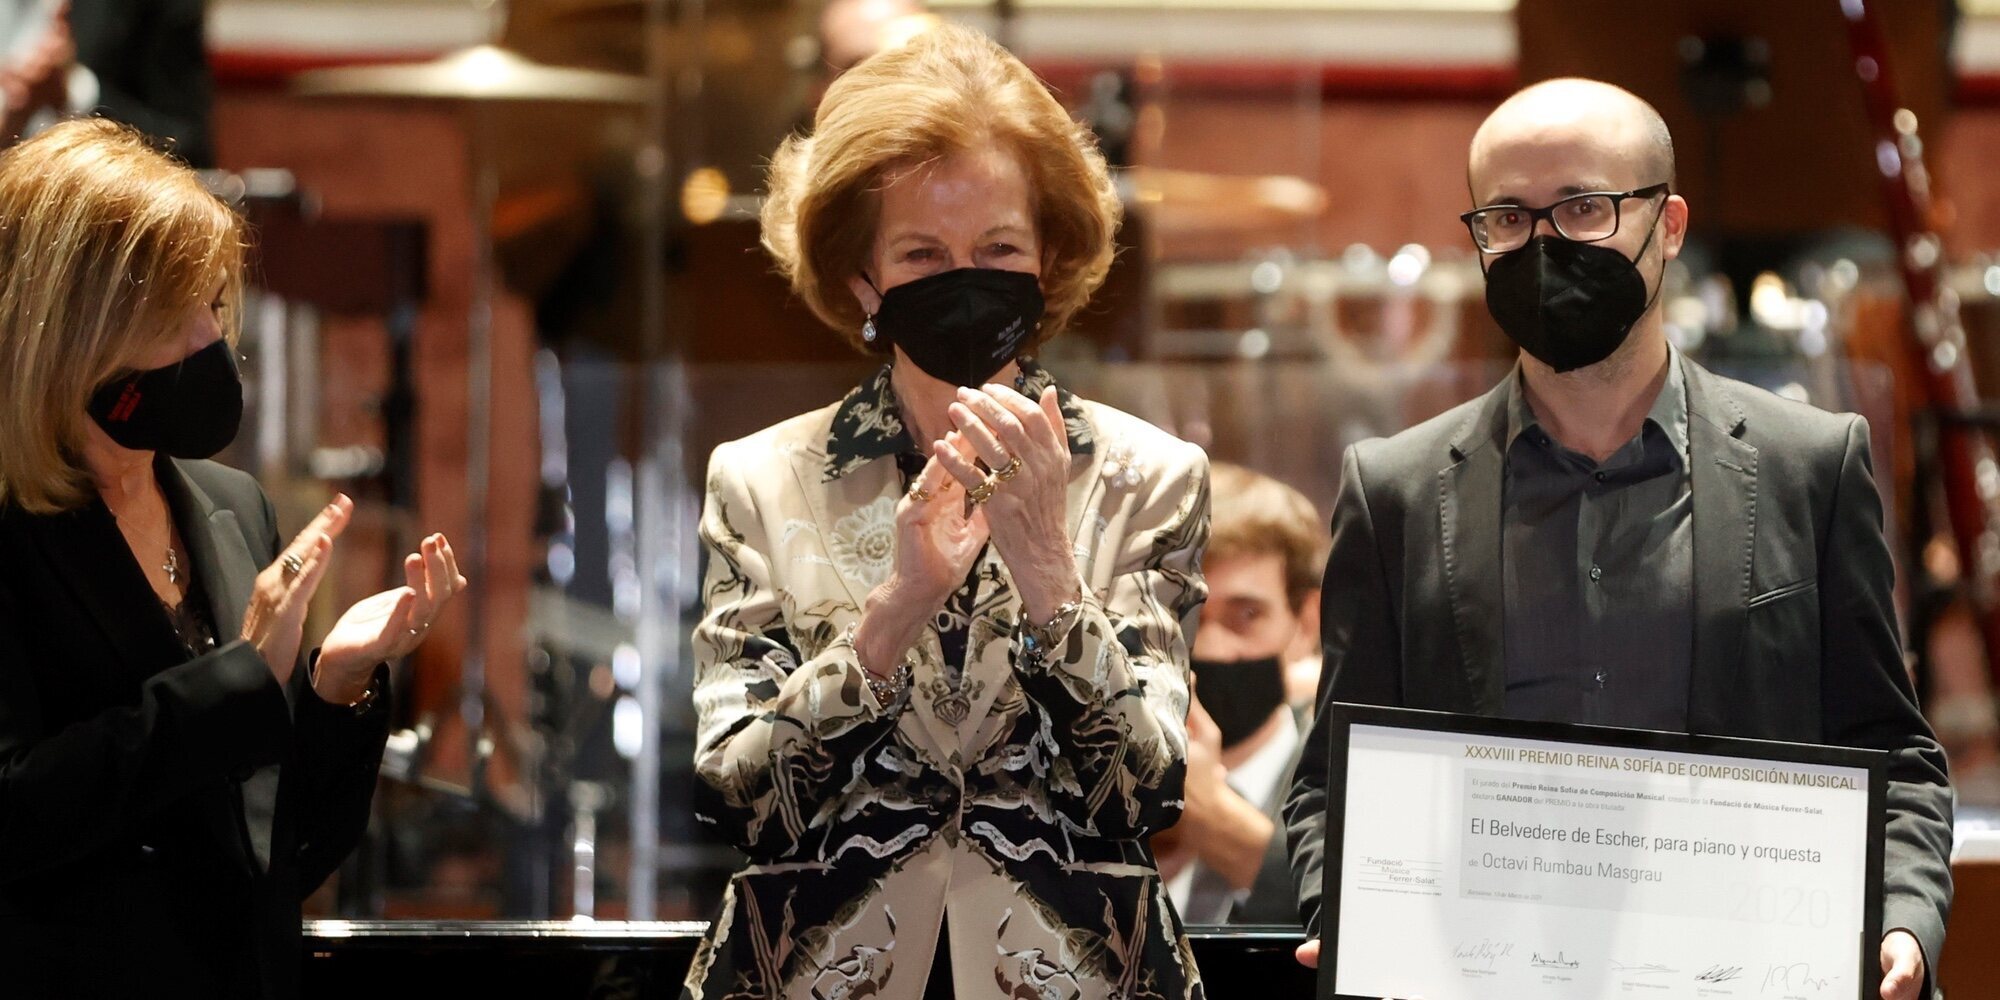 La Reina Sofía preside el concierto de los Premios Reina Sofía de Composición Musical